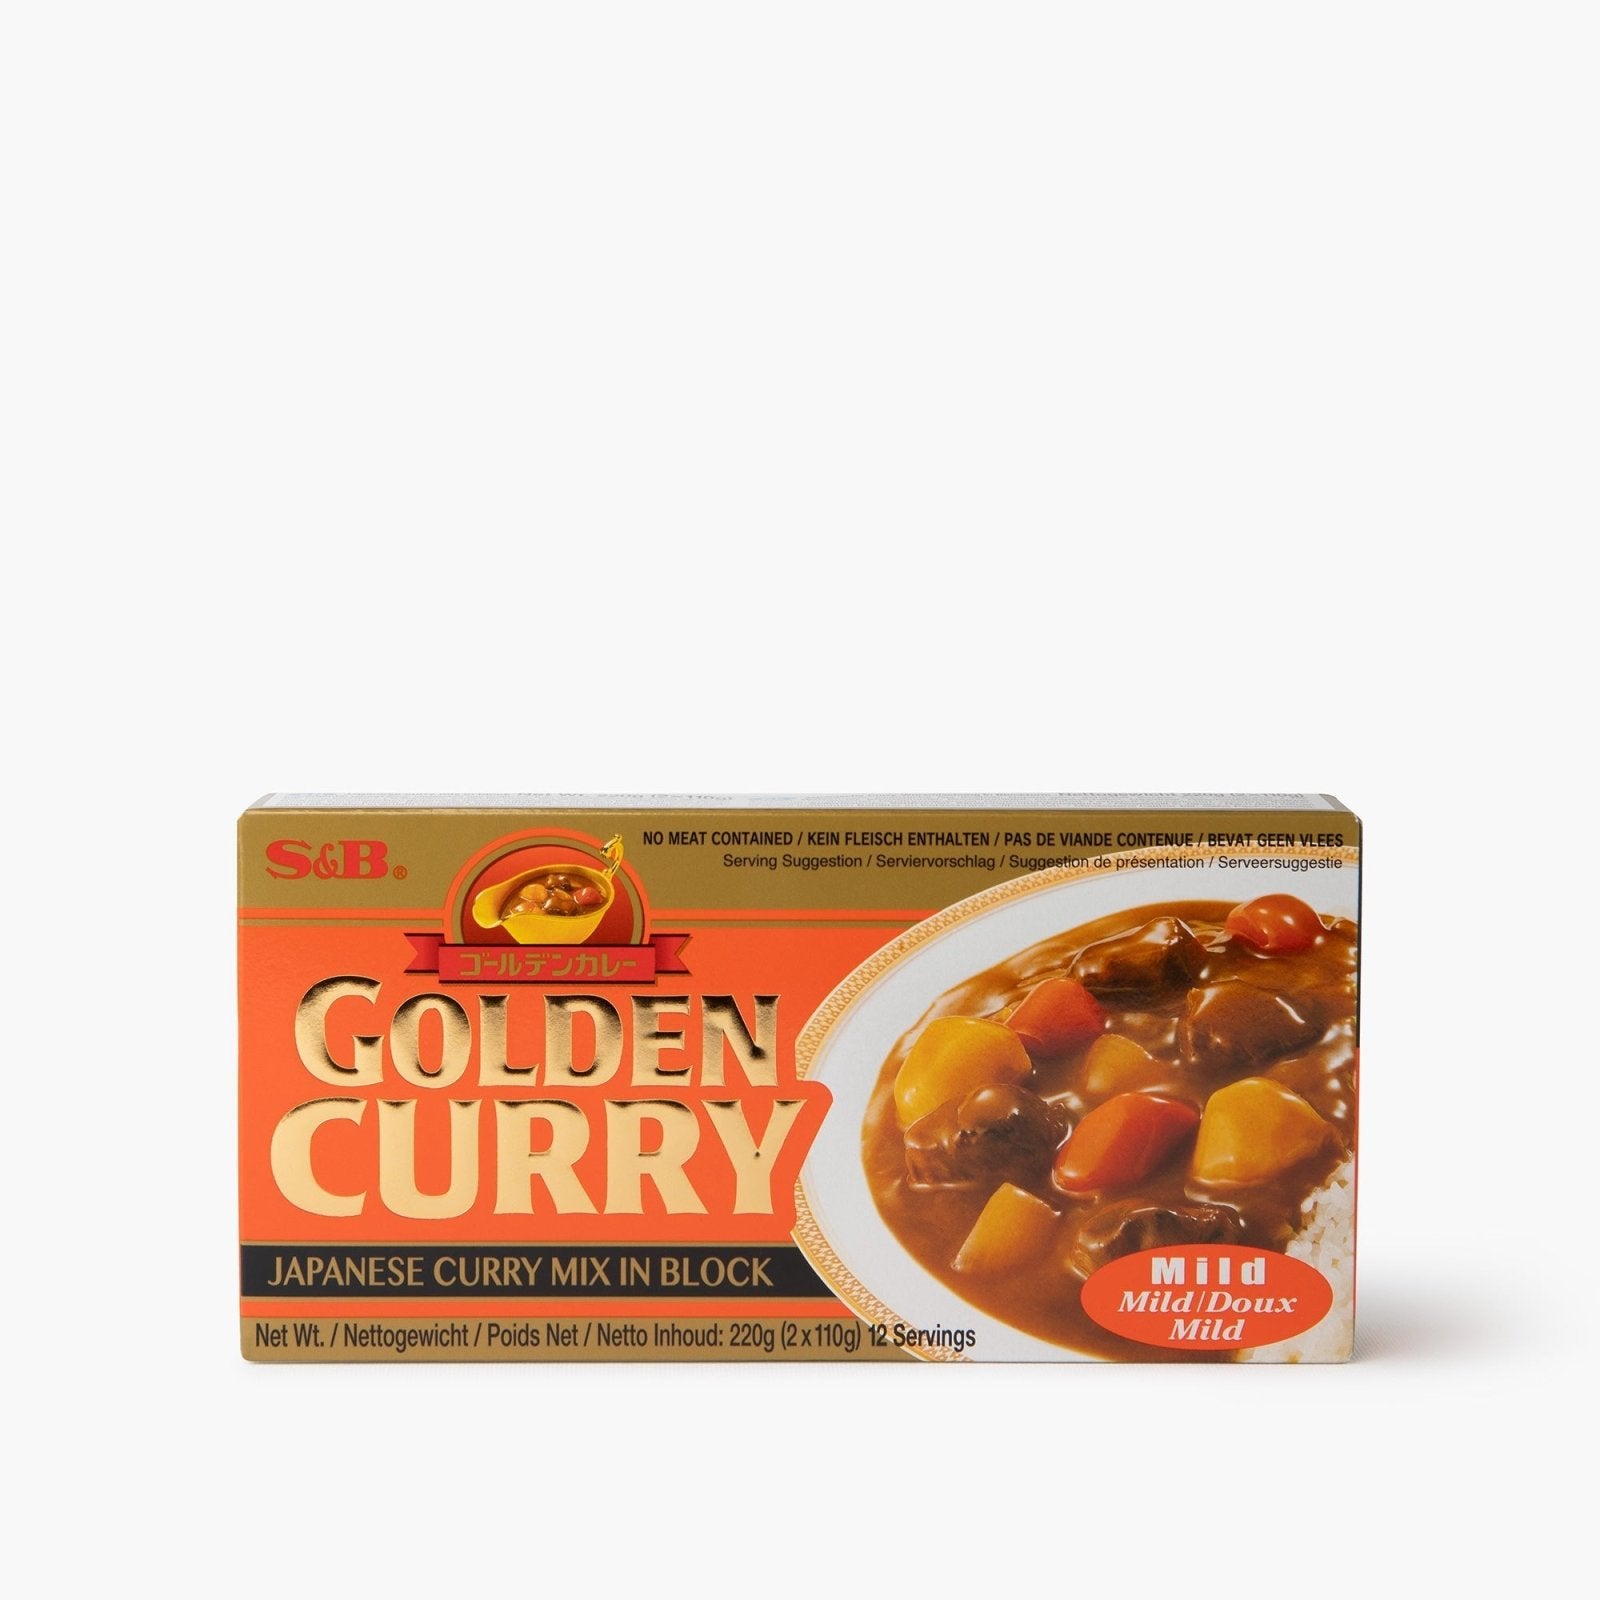 Sauce curry doux (mild) en tablette - 220g - S&B - iRASSHAi